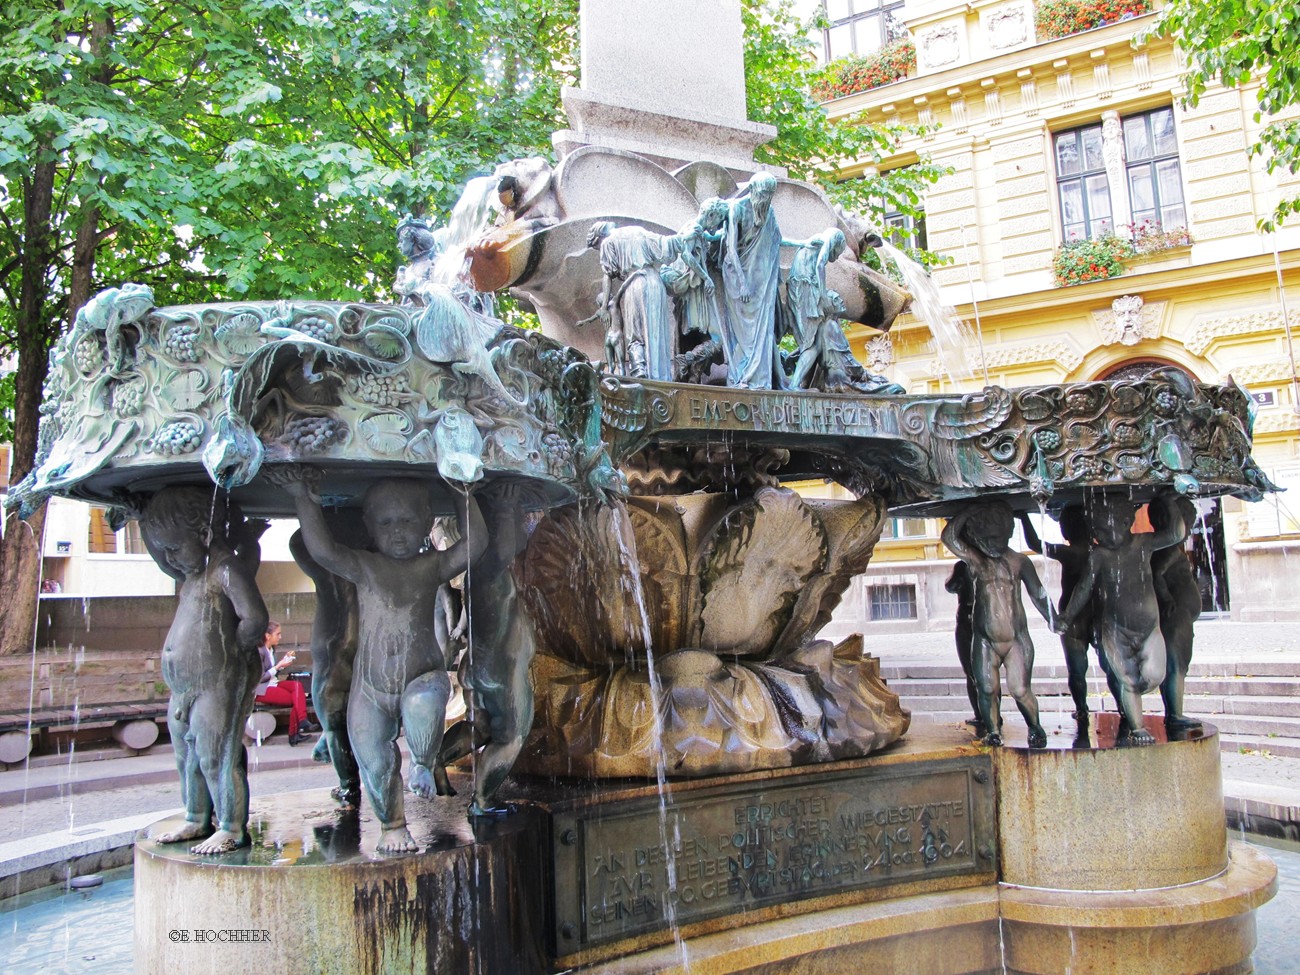 Empor die Herzen, Karl-Borromäus-Brunnen in Wien-Landstraße